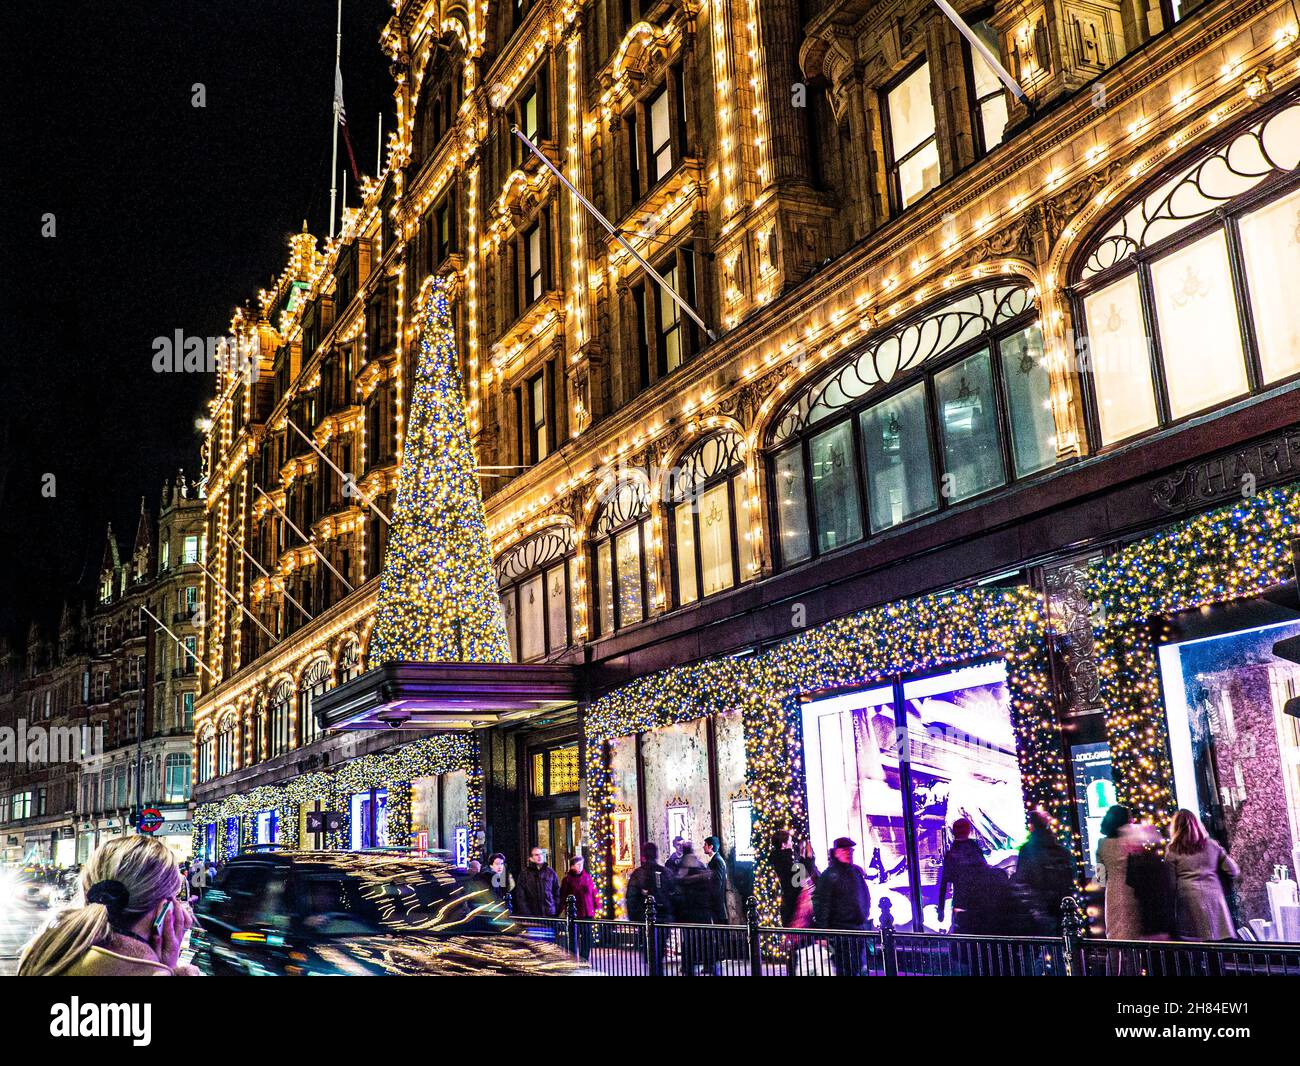 HARRODS CHRISTMAS SHOPPING Einkaufen Londoner Kaufhaus Harrods in der Dämmerung mit Weihnachtsbeleuchtung Menschenmengen und vorbeifahrende Autos Knightsbridge London SW1 Stockfoto